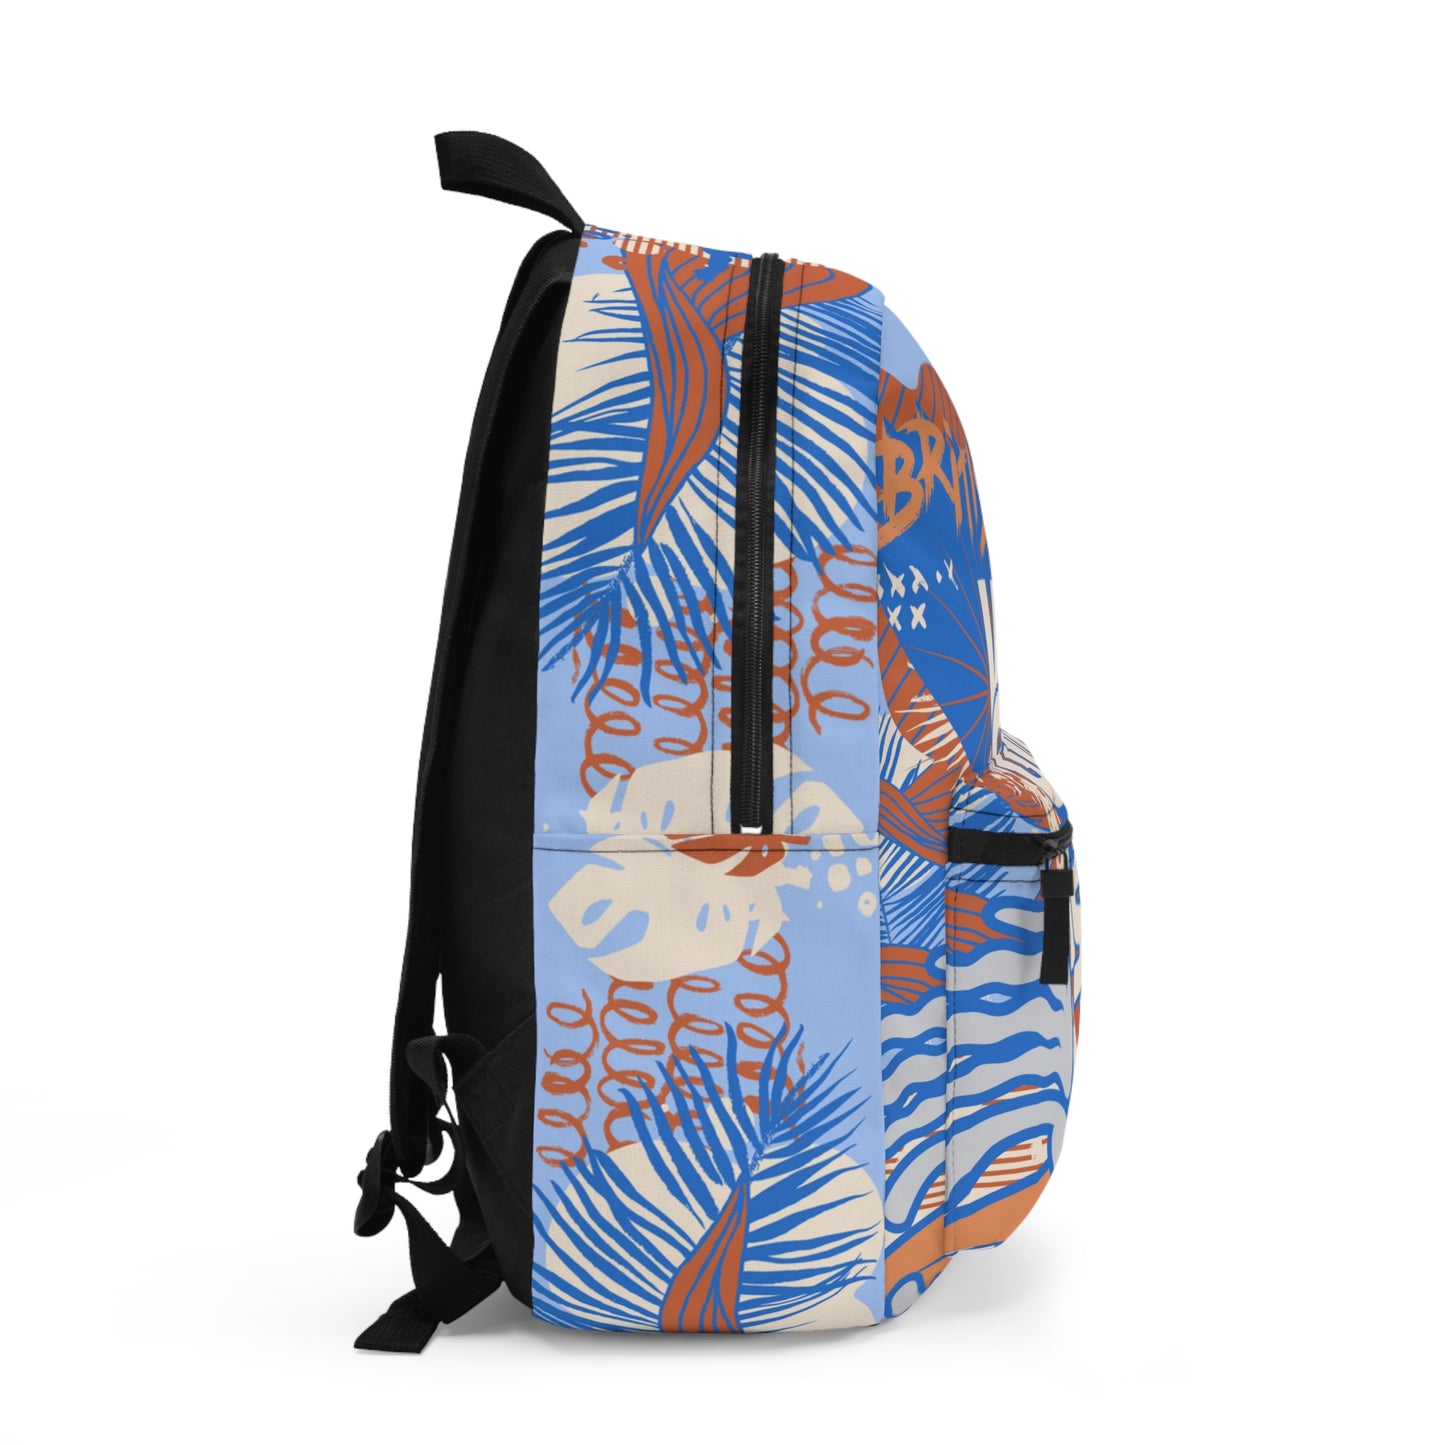 "BVI - For Island Life" (Crush) Backpack